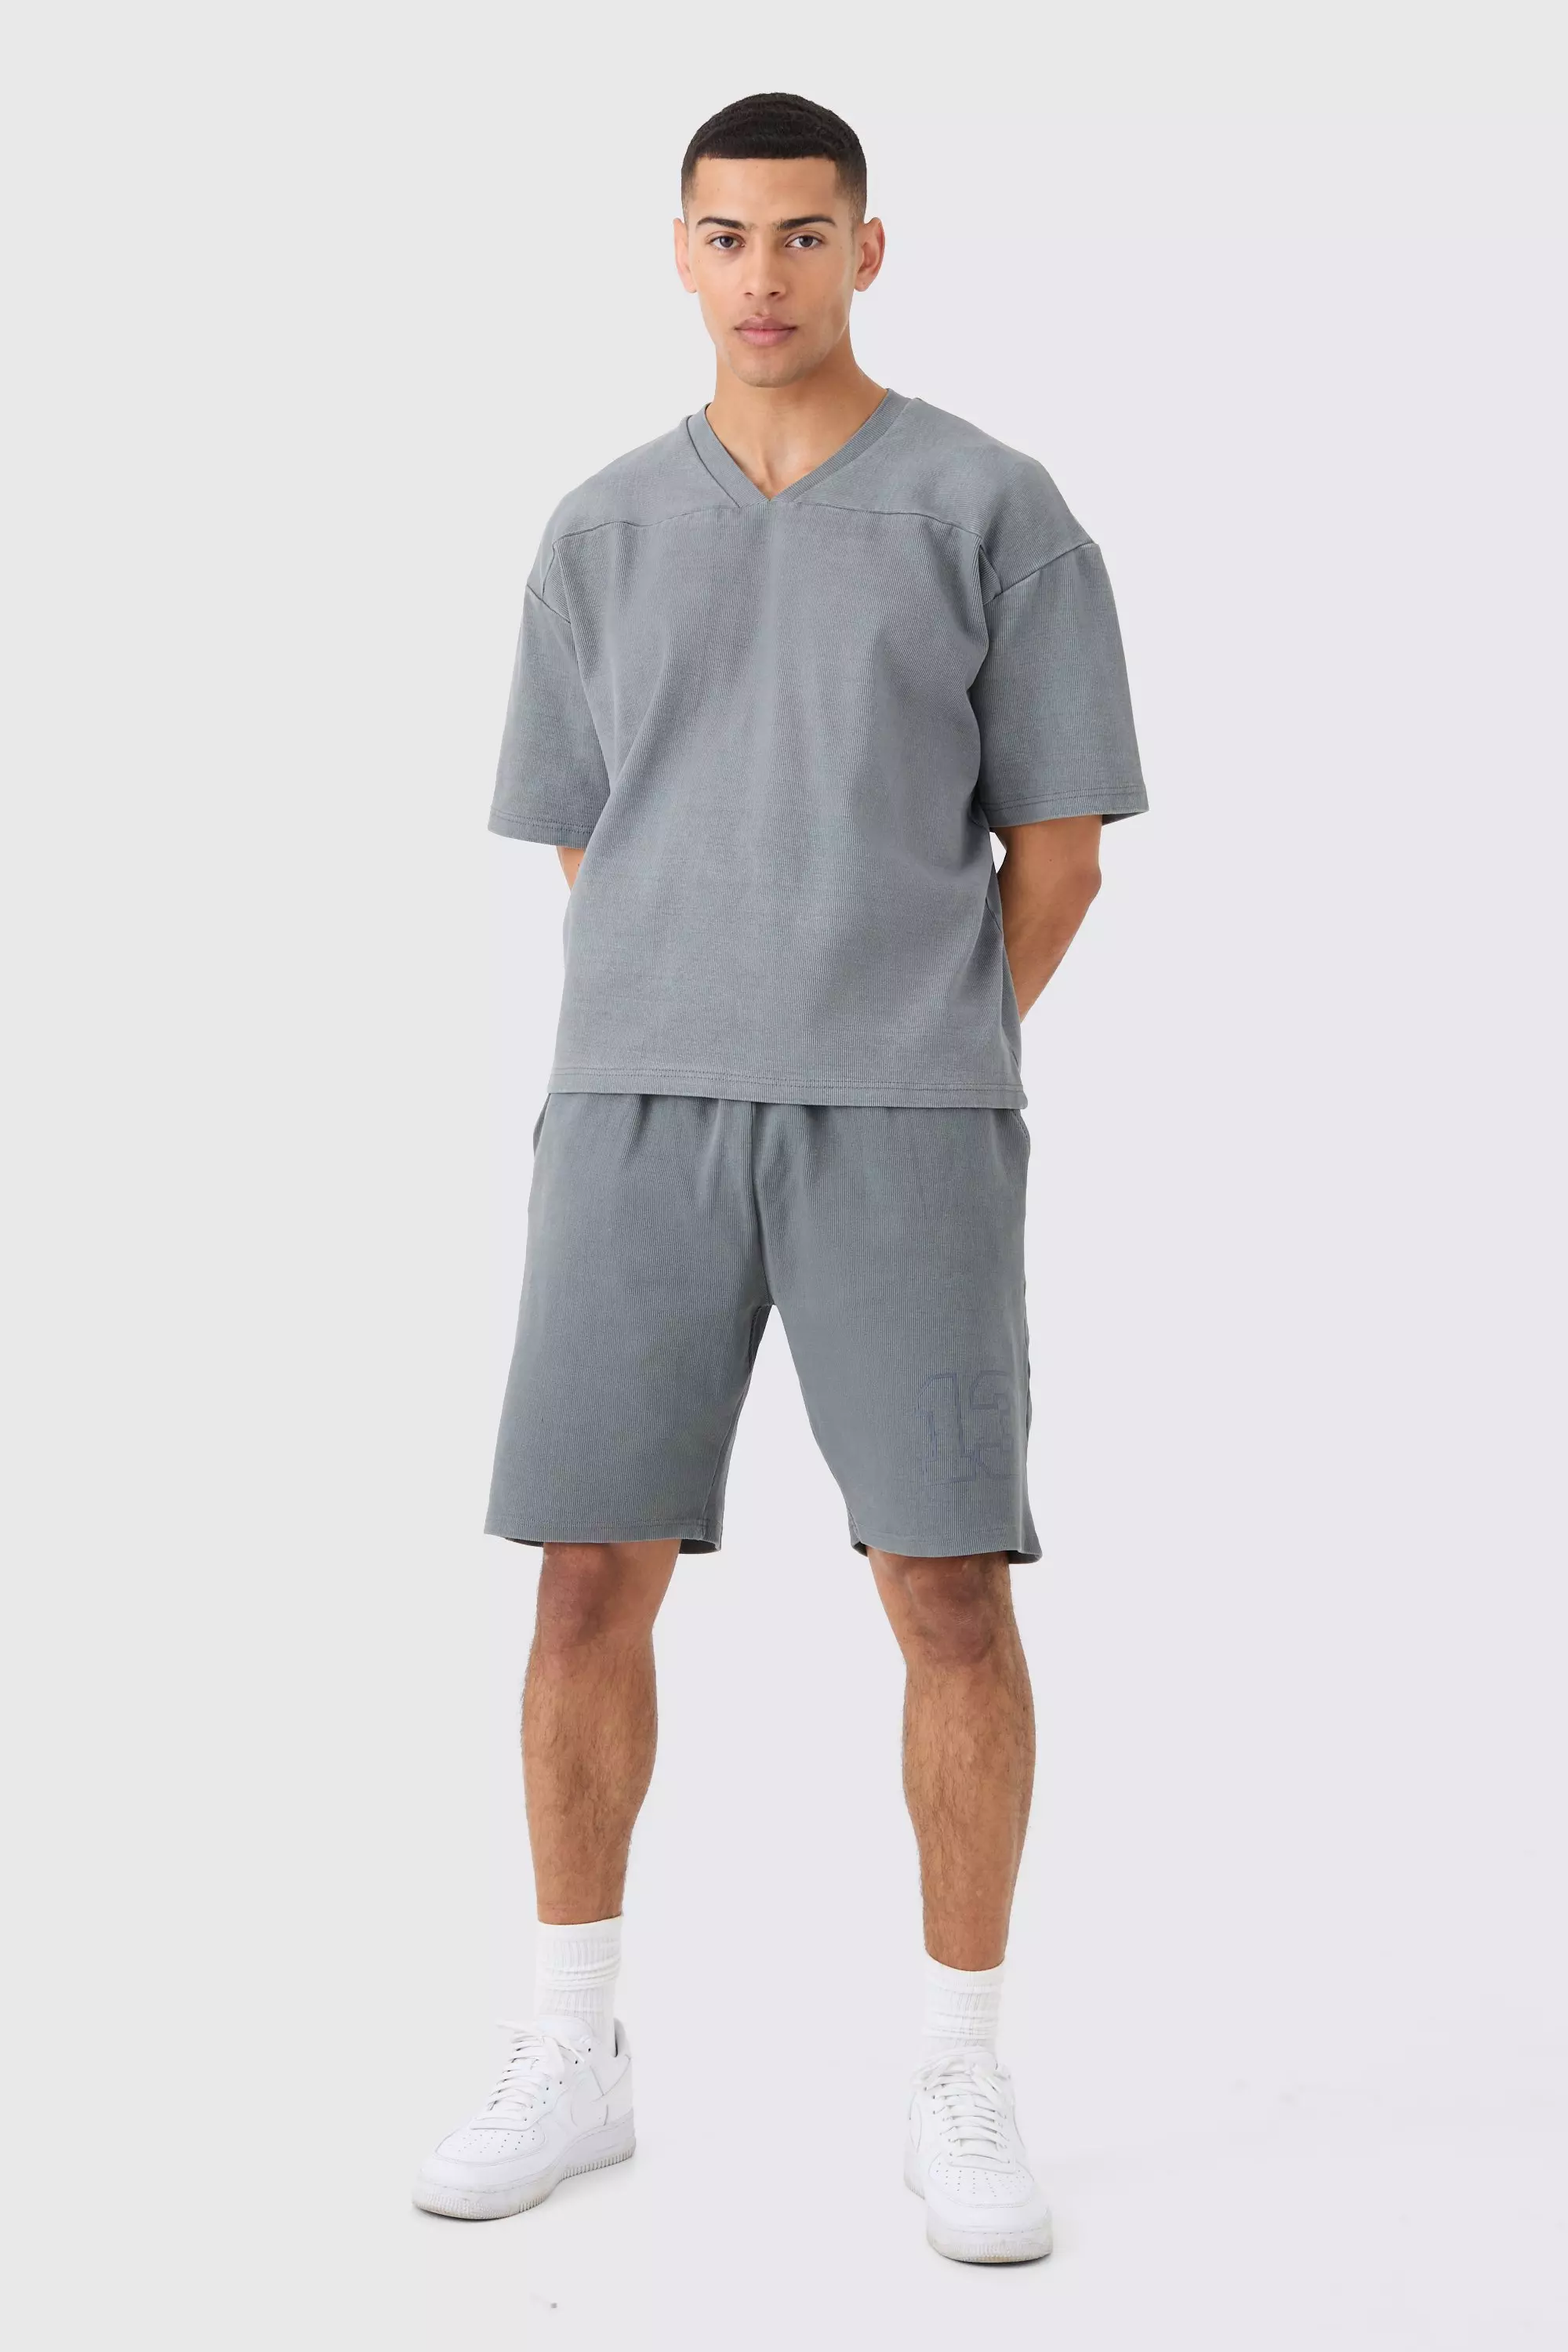 Grey Heavyweight Ribbed Washed Half Sleeve Sweatshirt & Short Set